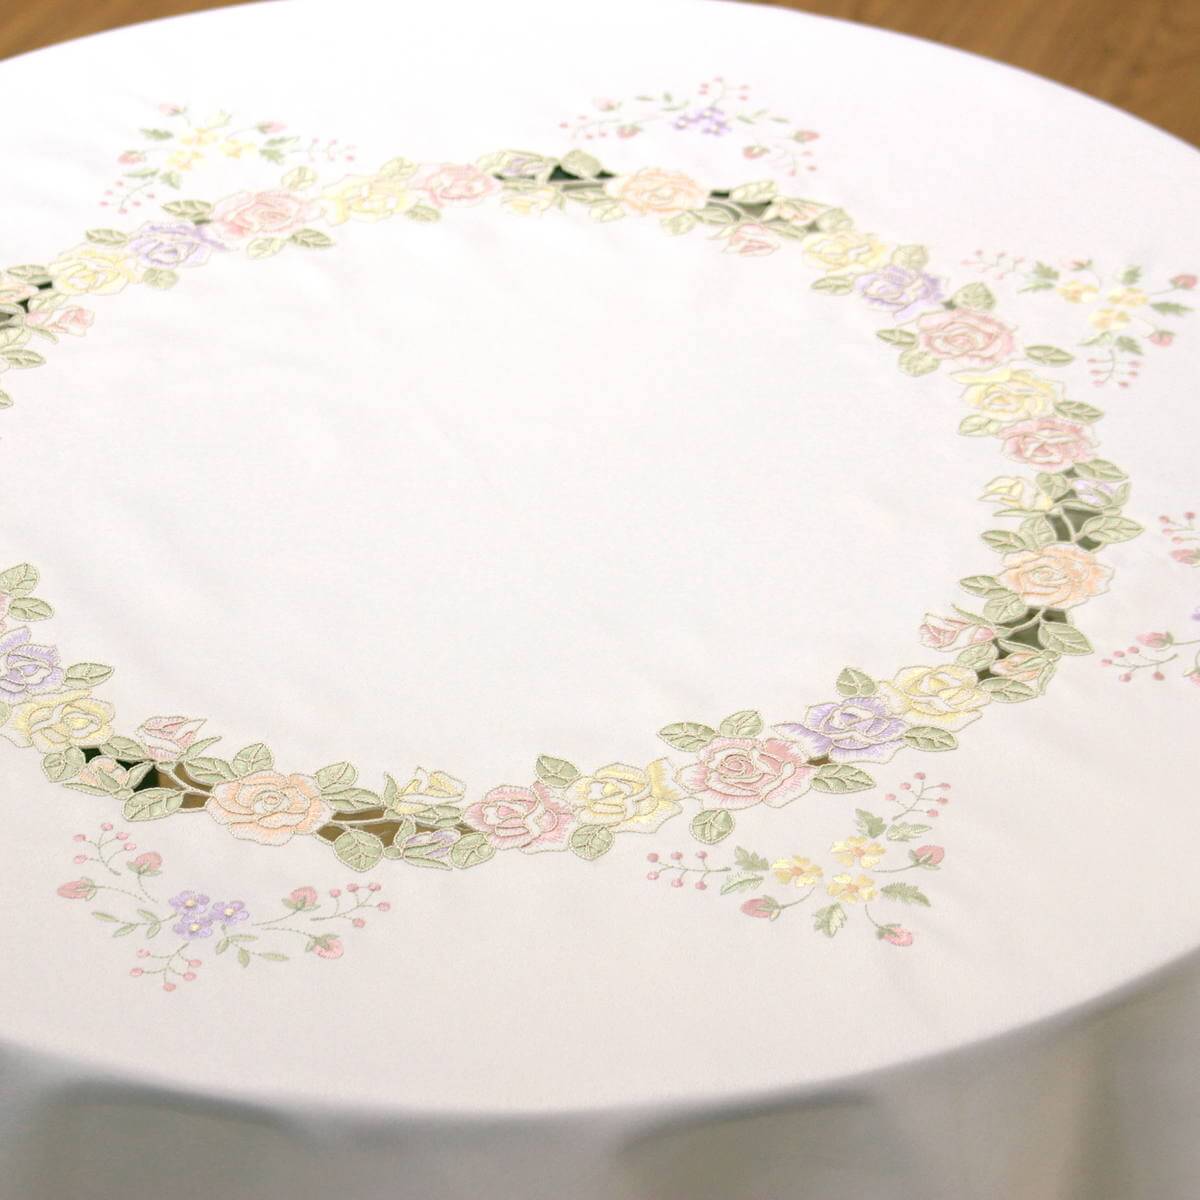 リボン&ローズシリーズテーブルクロスは中心部分も淡く優しい色合いのコード刺繍が取り囲んでいます。